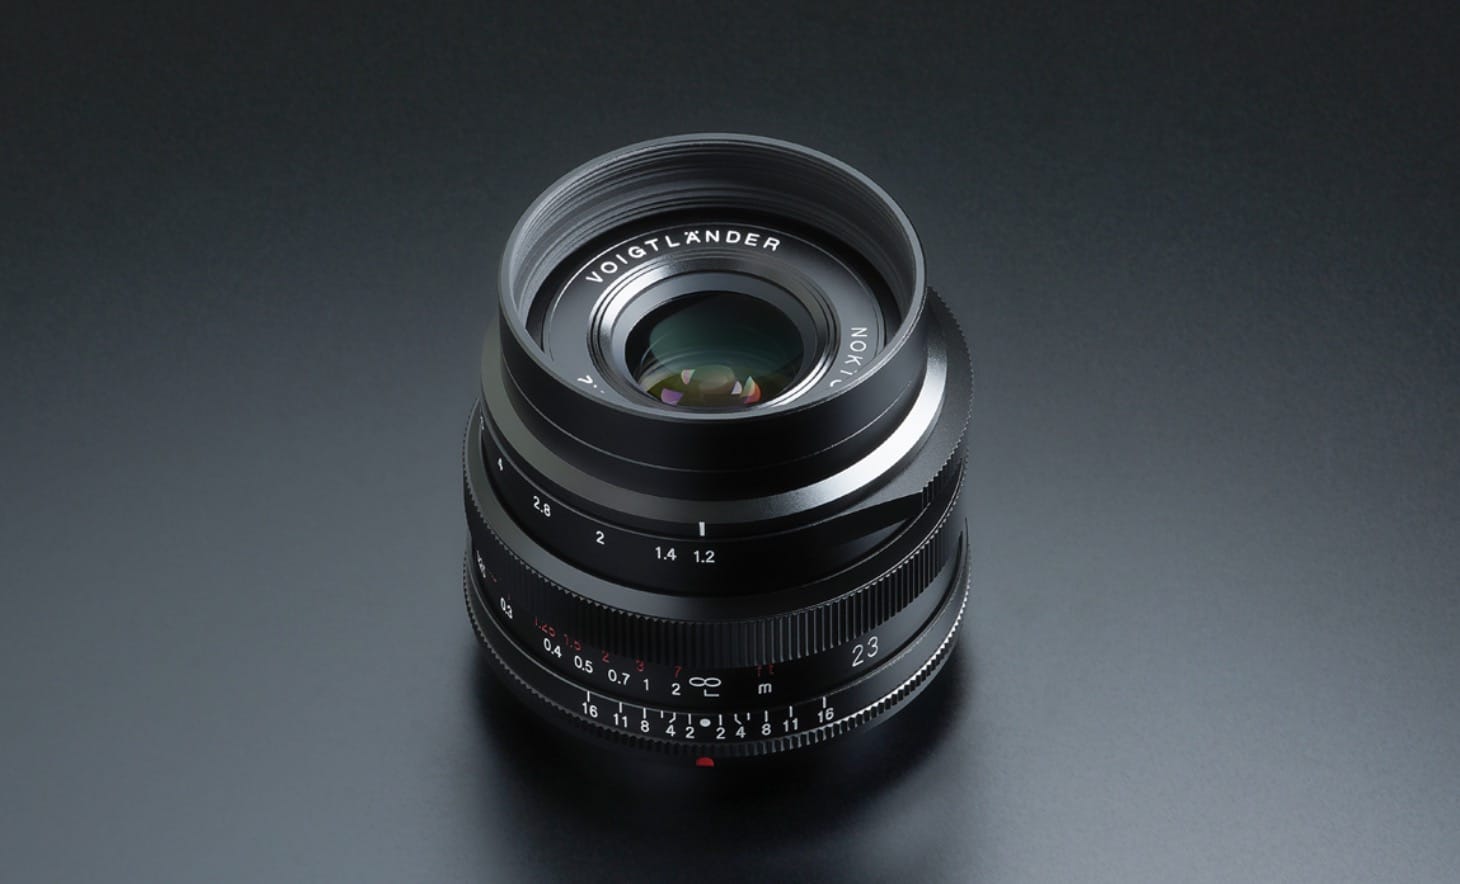 Cosina ra mắt ống kính NOKTON 23mm F1.2 Aspherical dành cho Fujifilm ngàm X